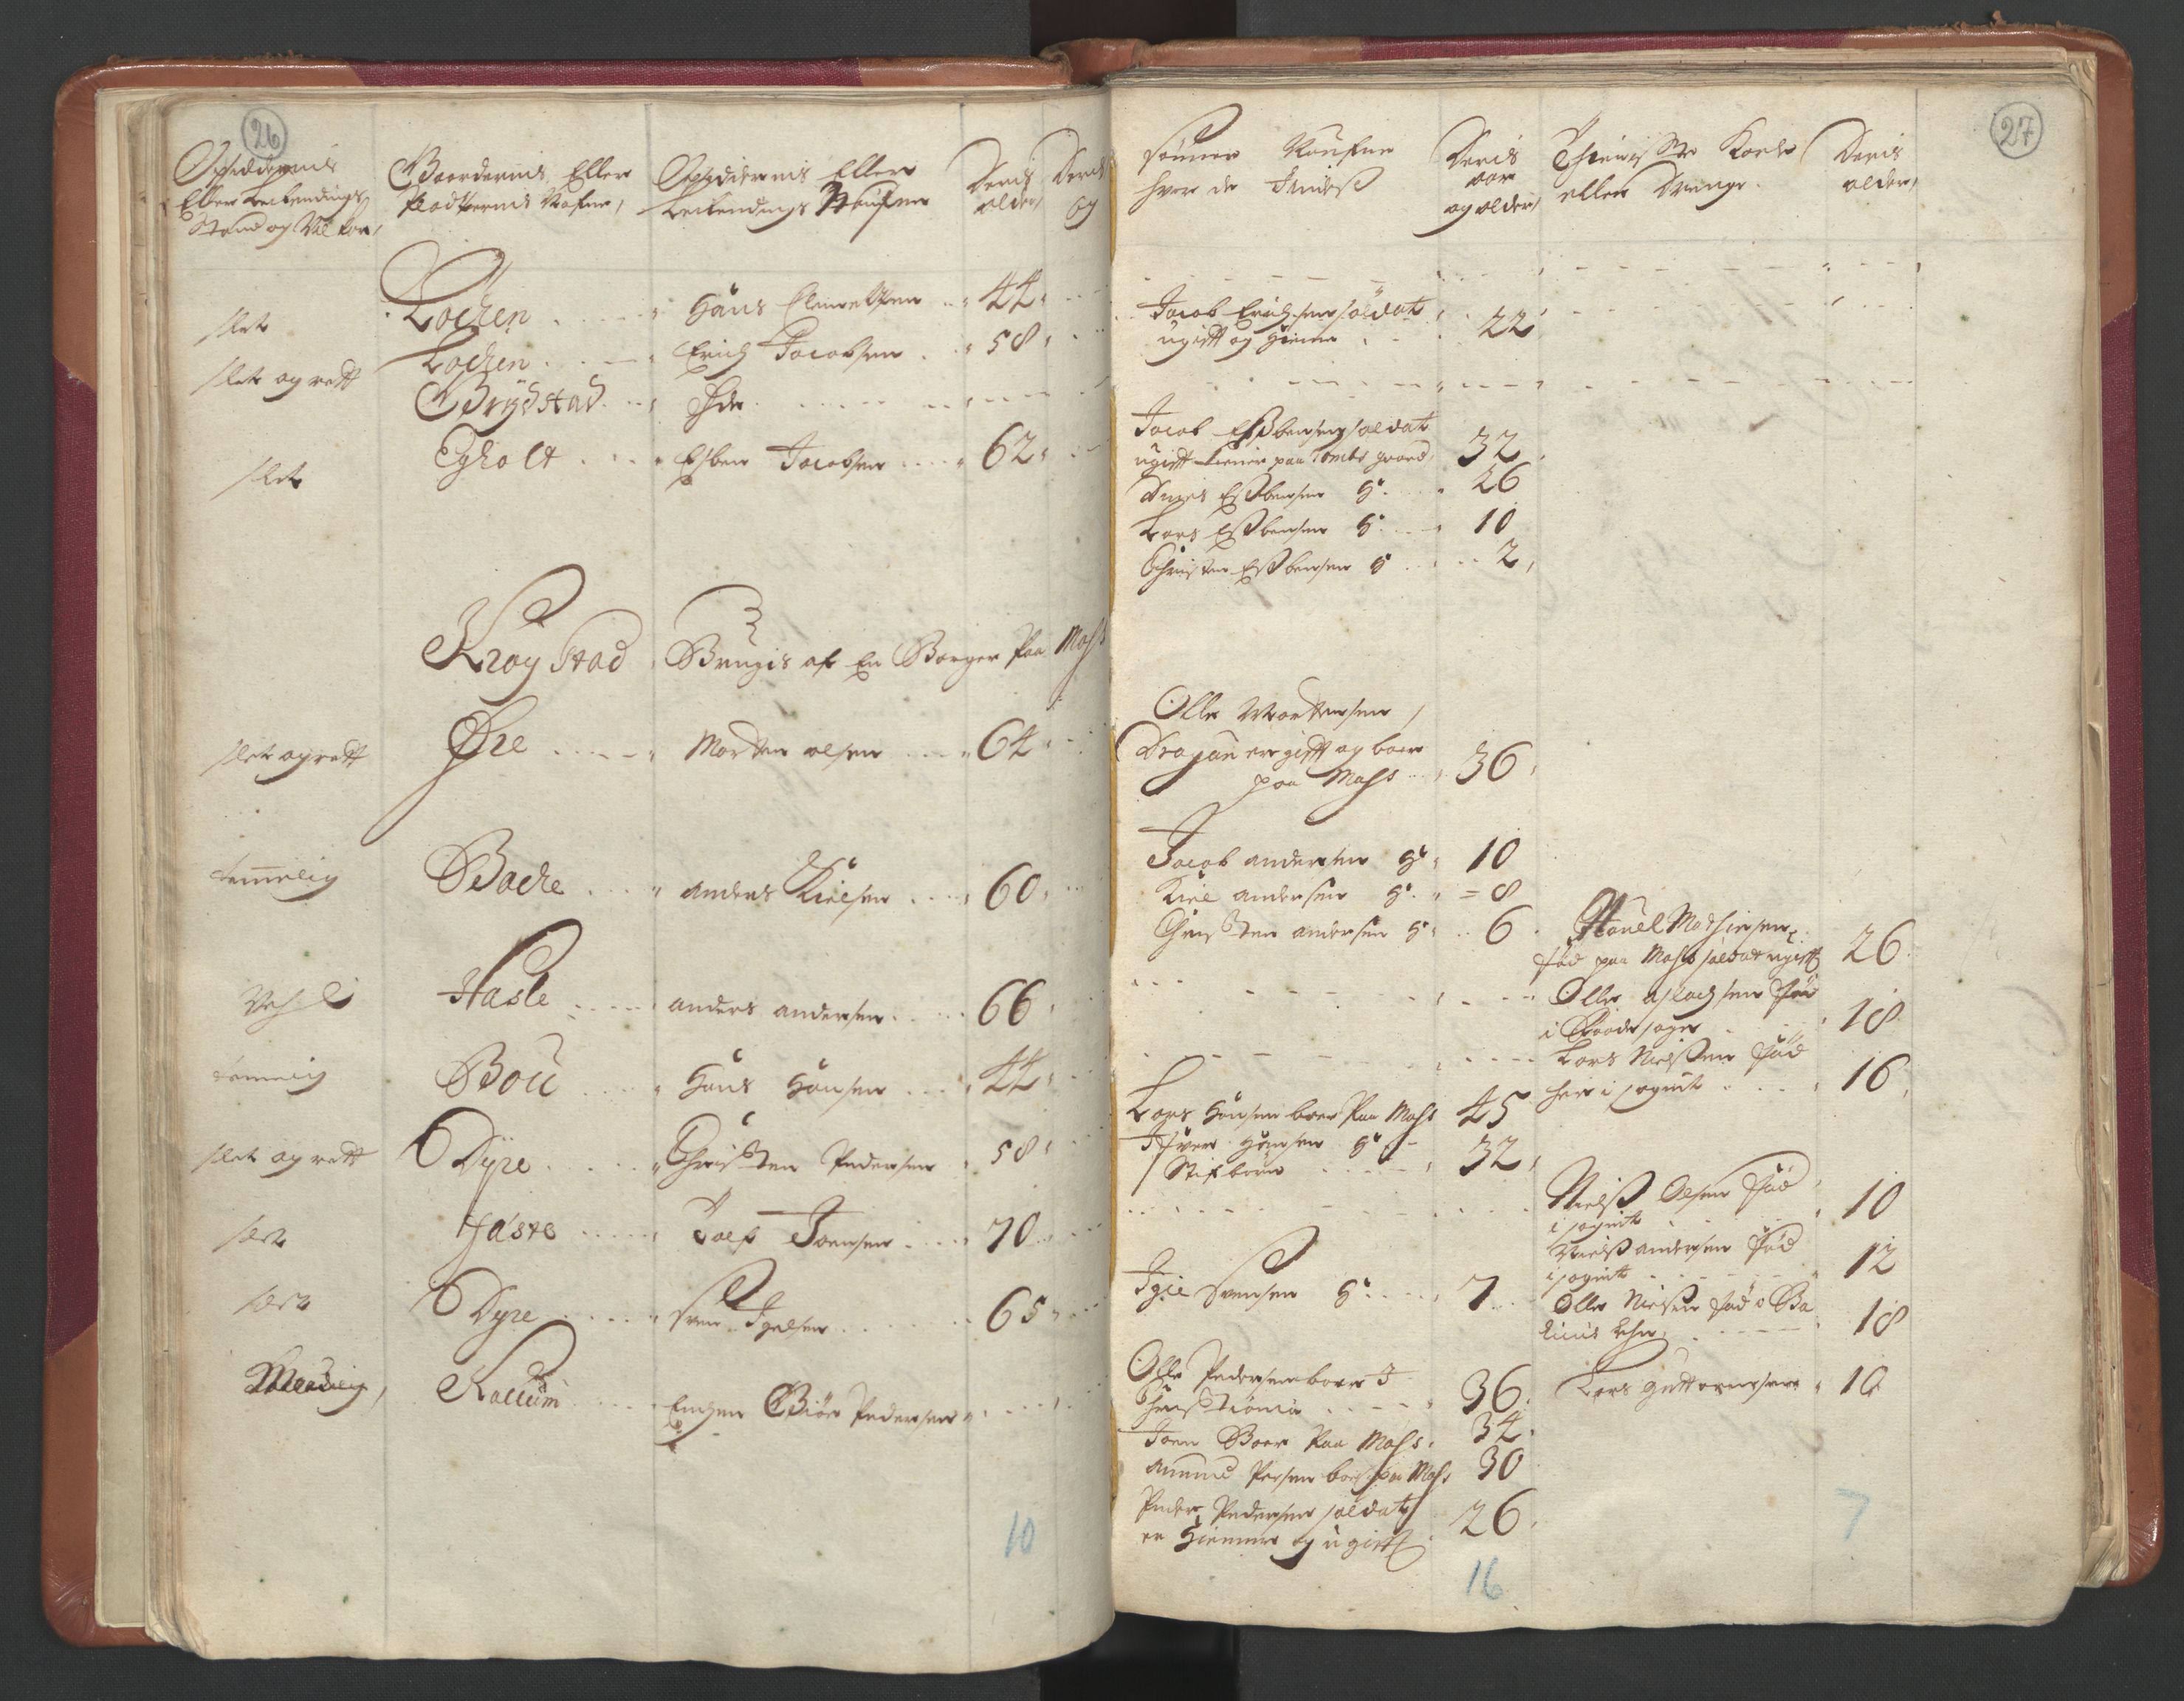 RA, Manntallet 1701, nr. 1: Moss, Onsøy, Tune og Veme fogderi og Nedre Romerike fogderi, 1701, s. 26-27